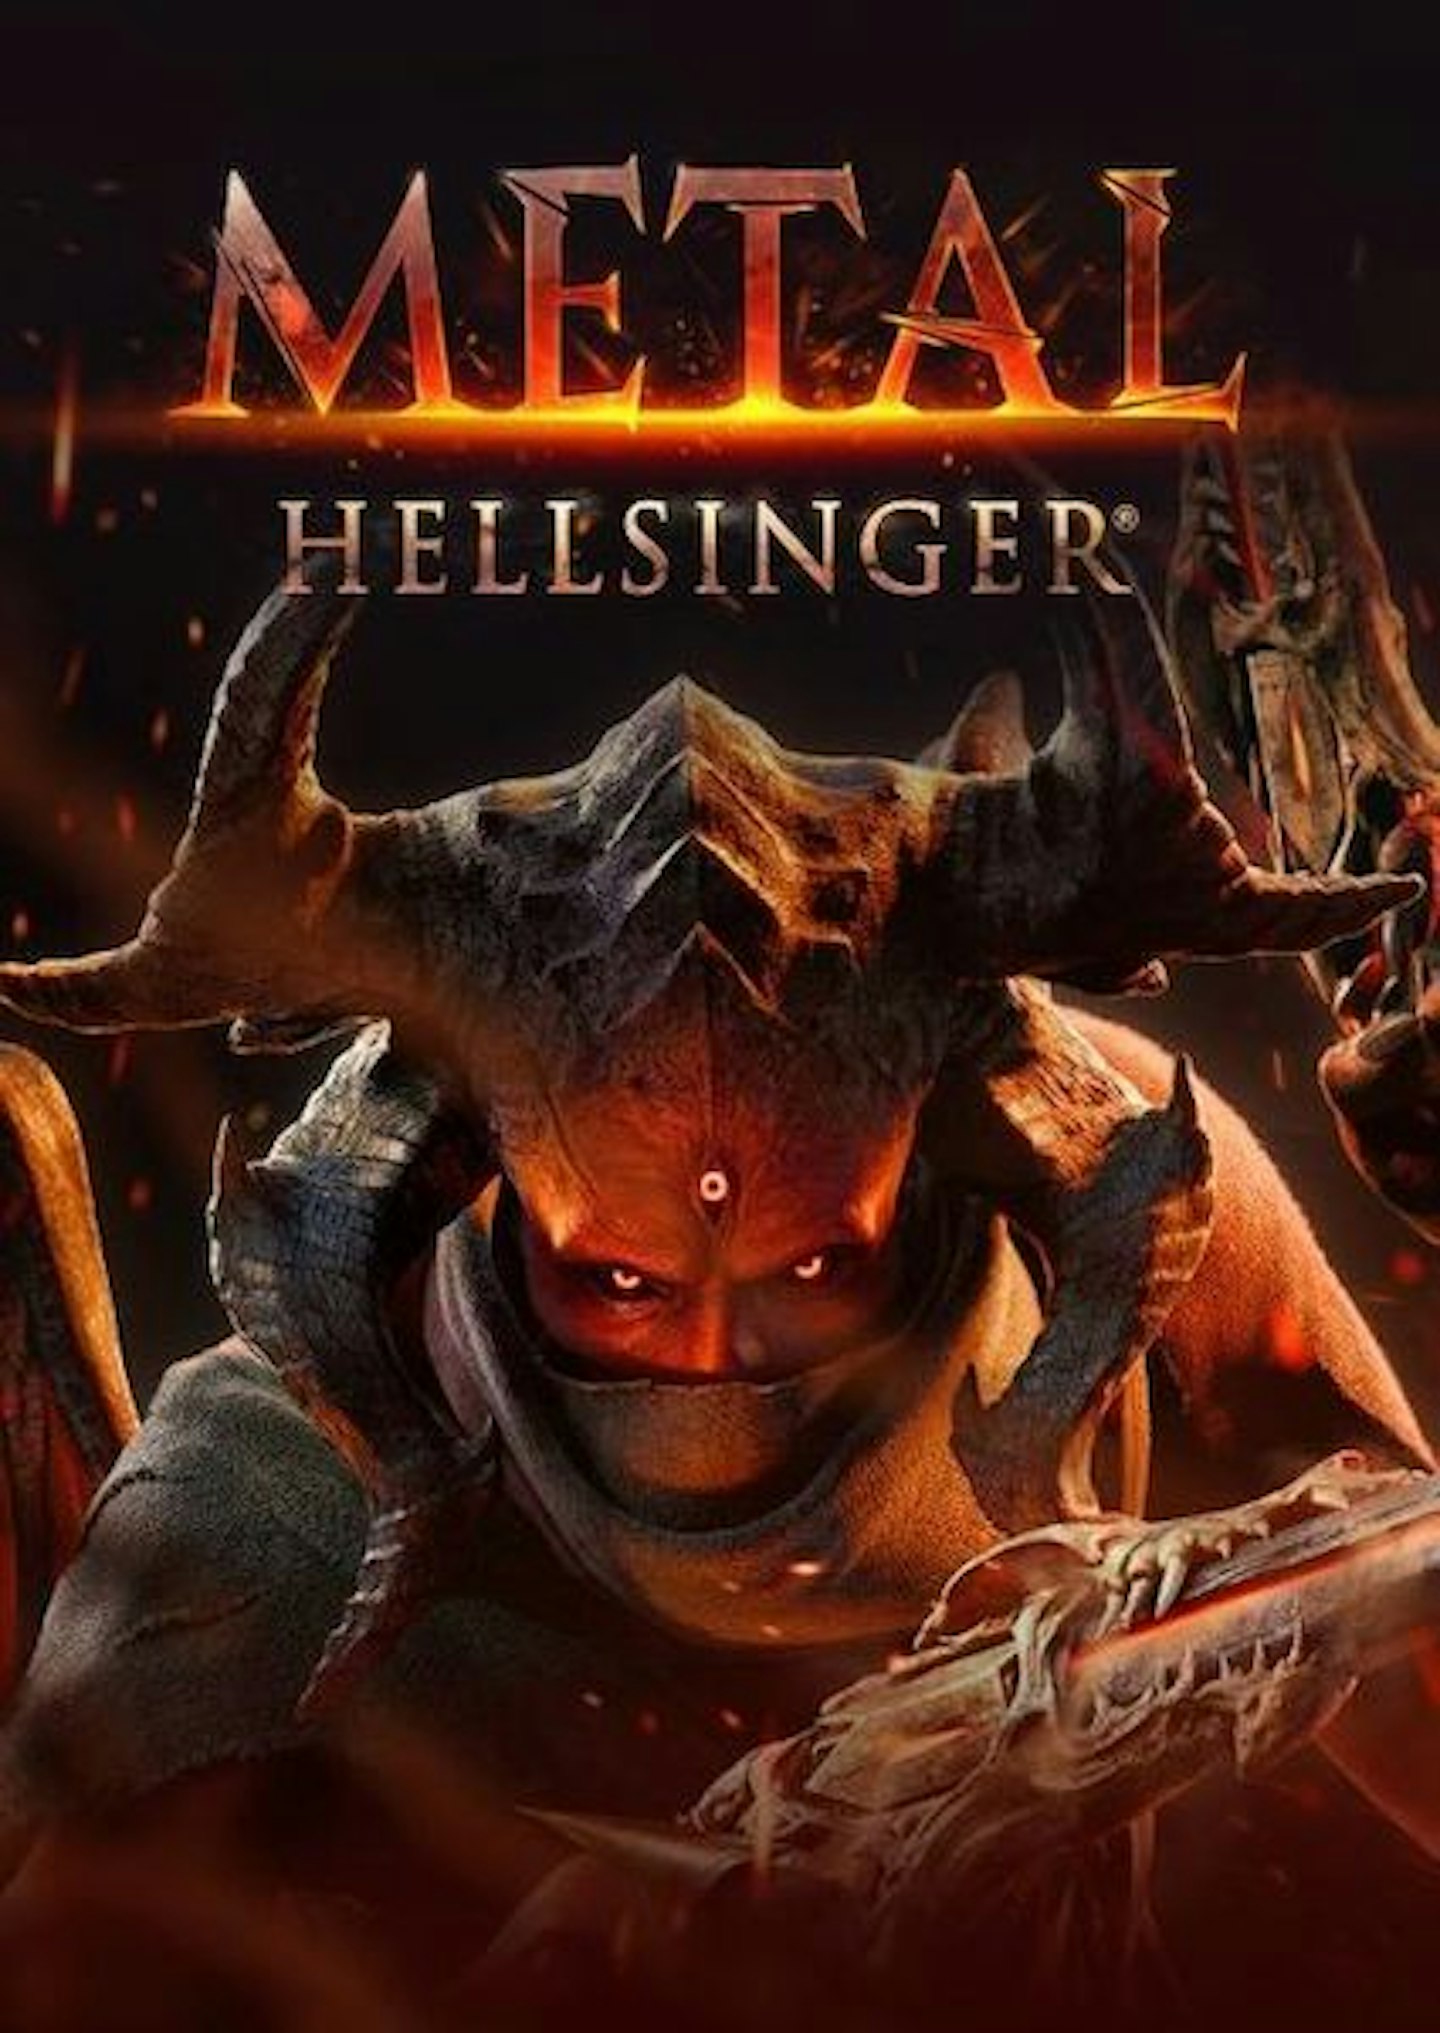 Metal Hellsinger